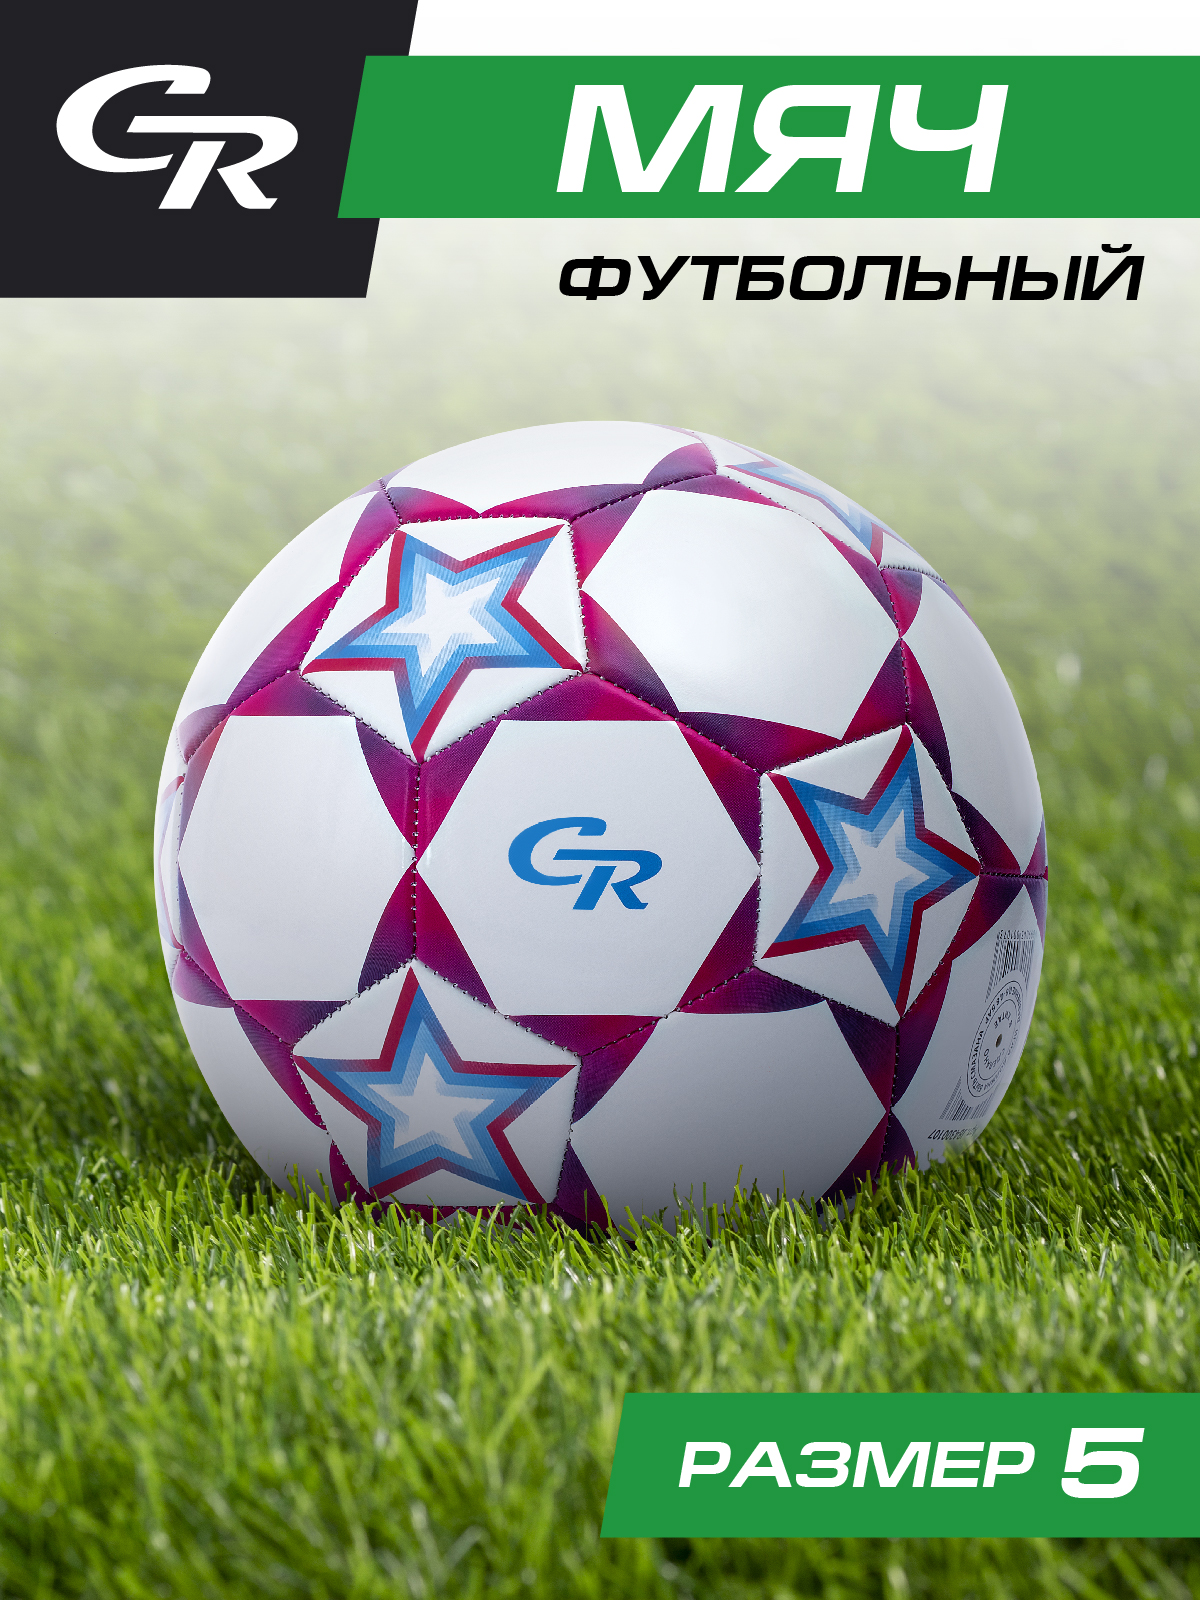 Мяч футбольный ТМ City Ride, 3-слойный, сшитые панели, ПВХ, размер 5, диаметр 22,JB4300107